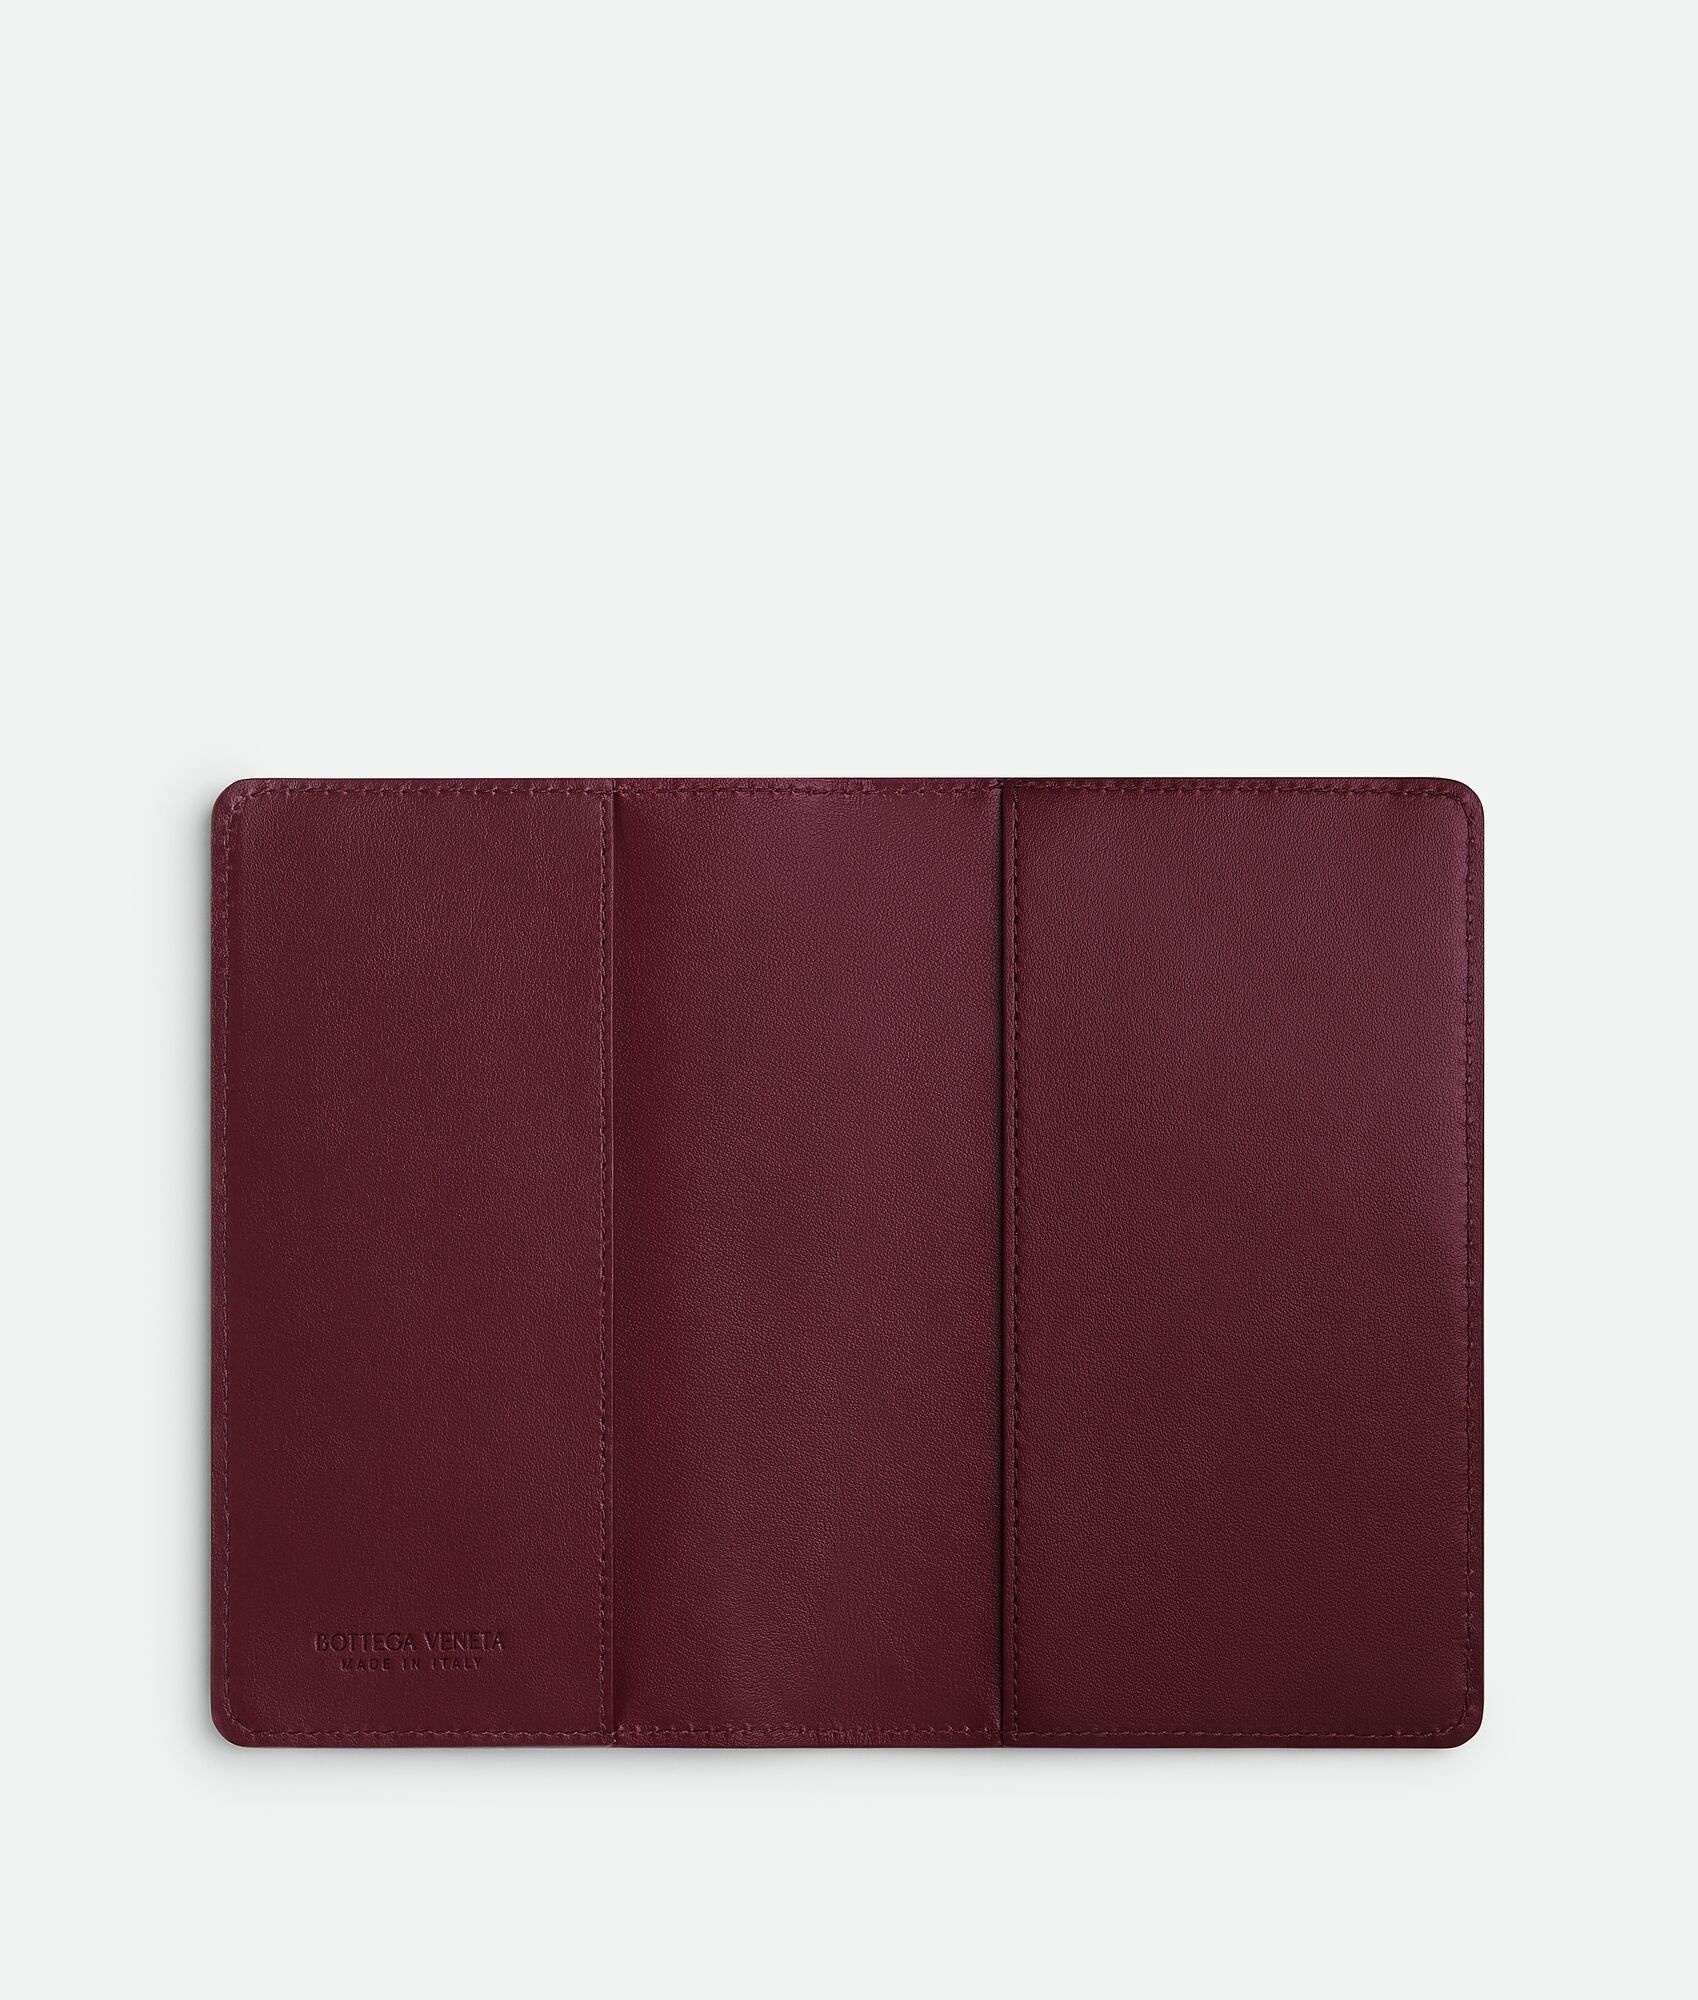 Small Intrecciato Notebook Cover - 2